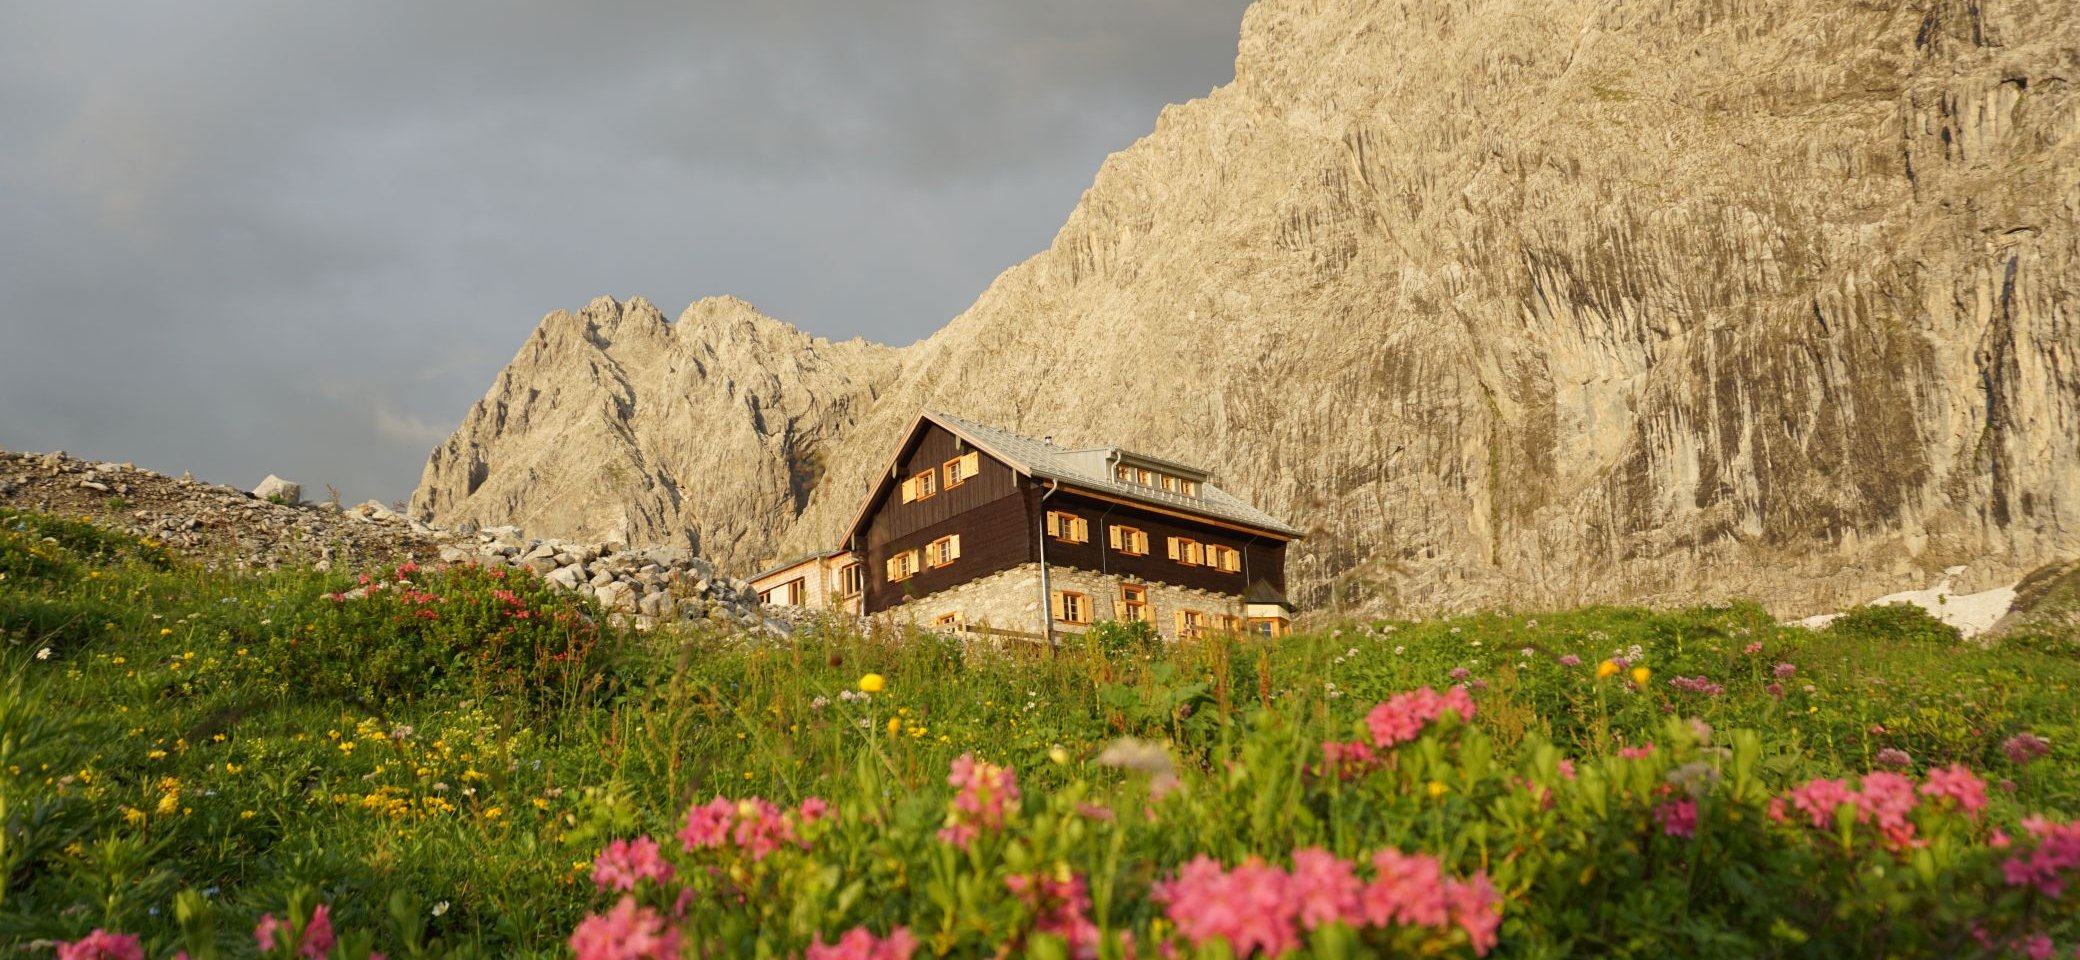 Anhalter Hütte und Gabelspitze | © Angelika Grünauer